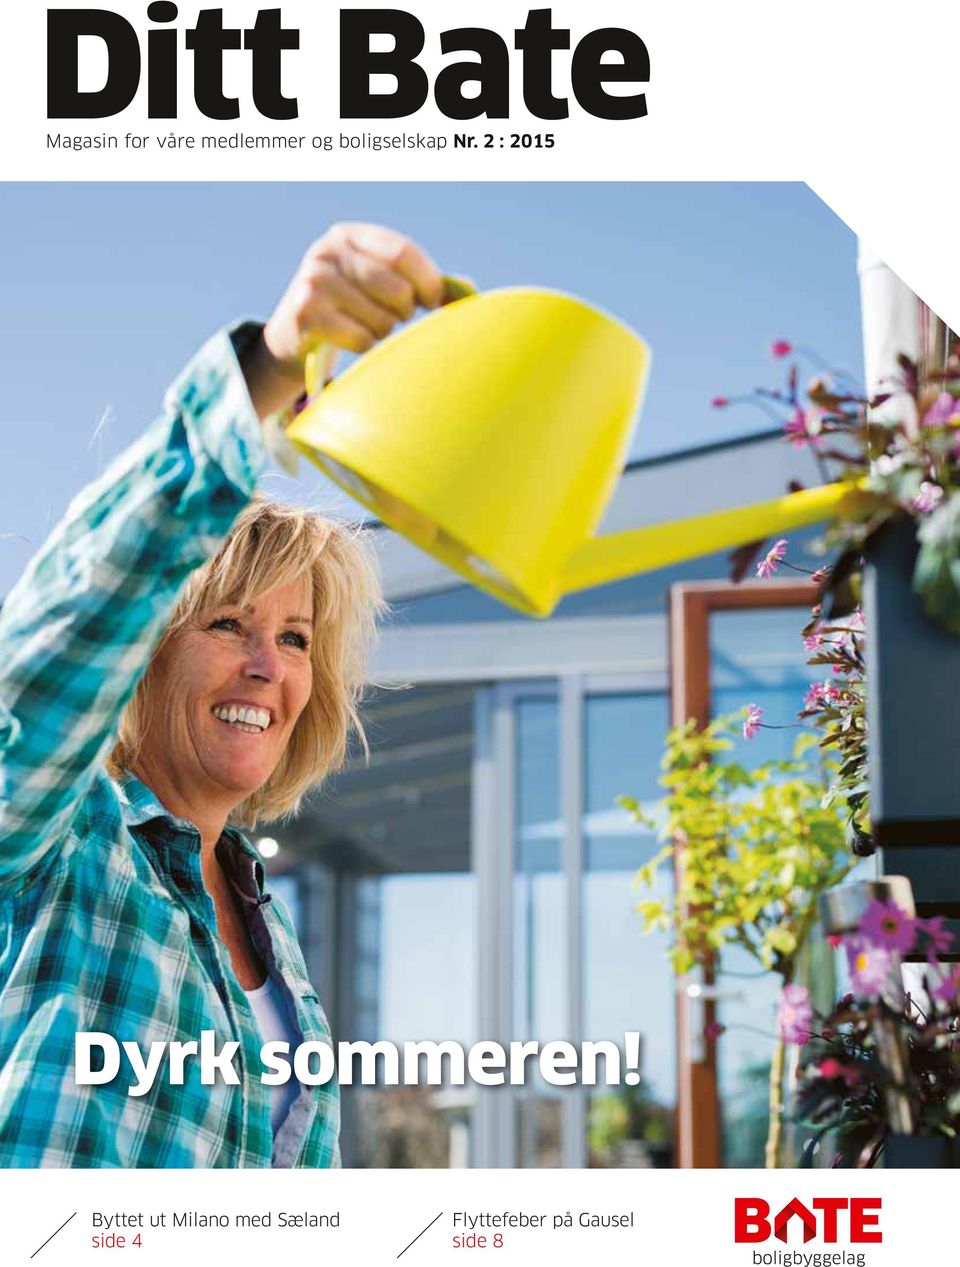 2 : 2015 Dyrk sommeren!